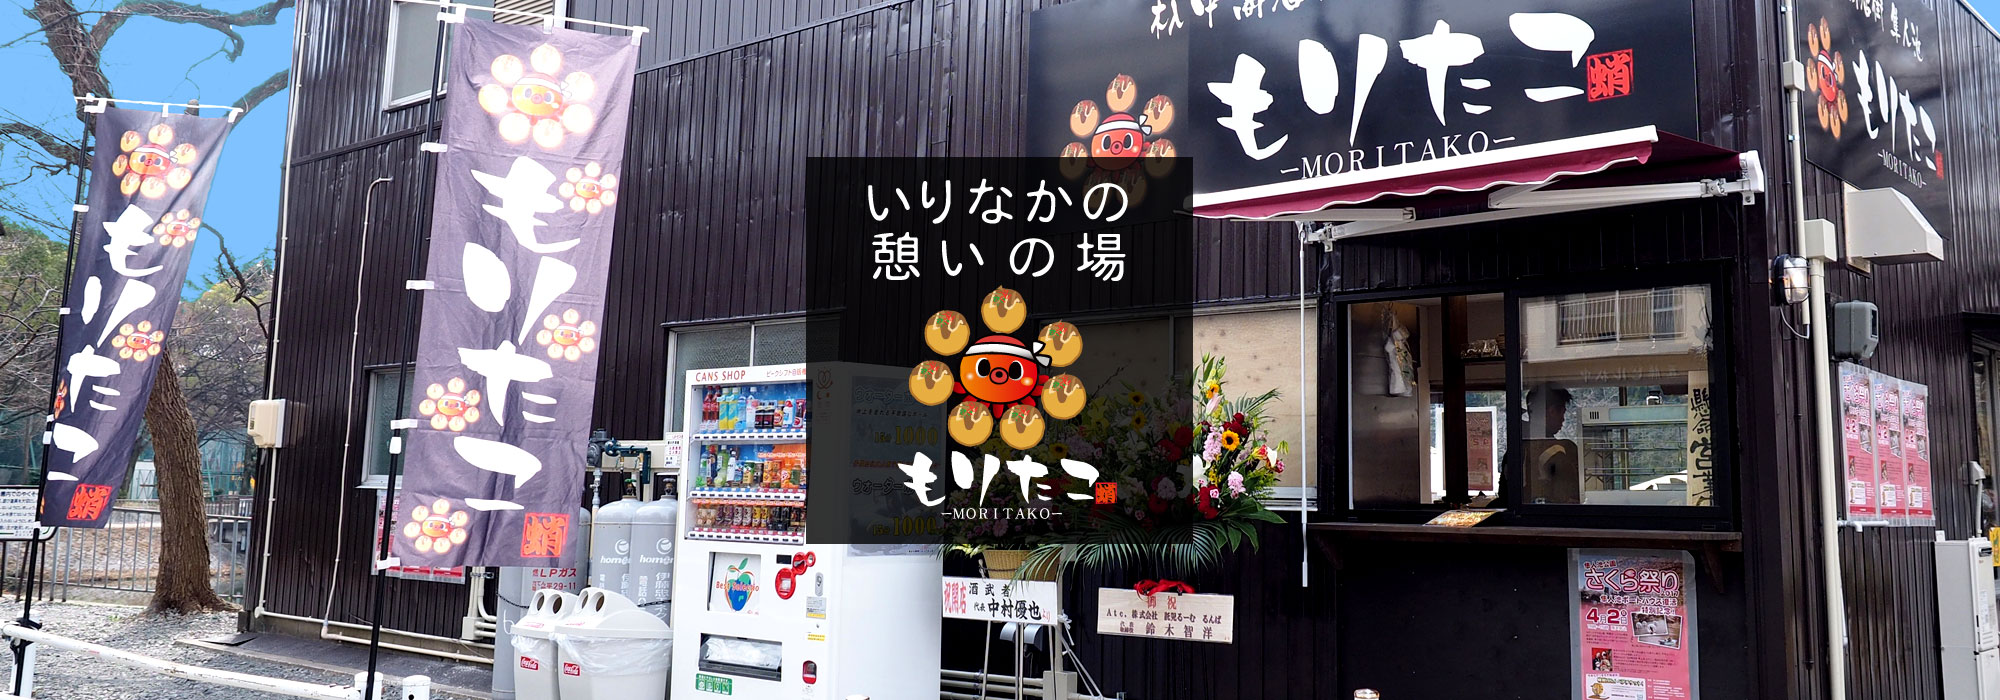 昭和区のたこ焼き屋 杁中商店街 隼人池 もりたこイメージ1